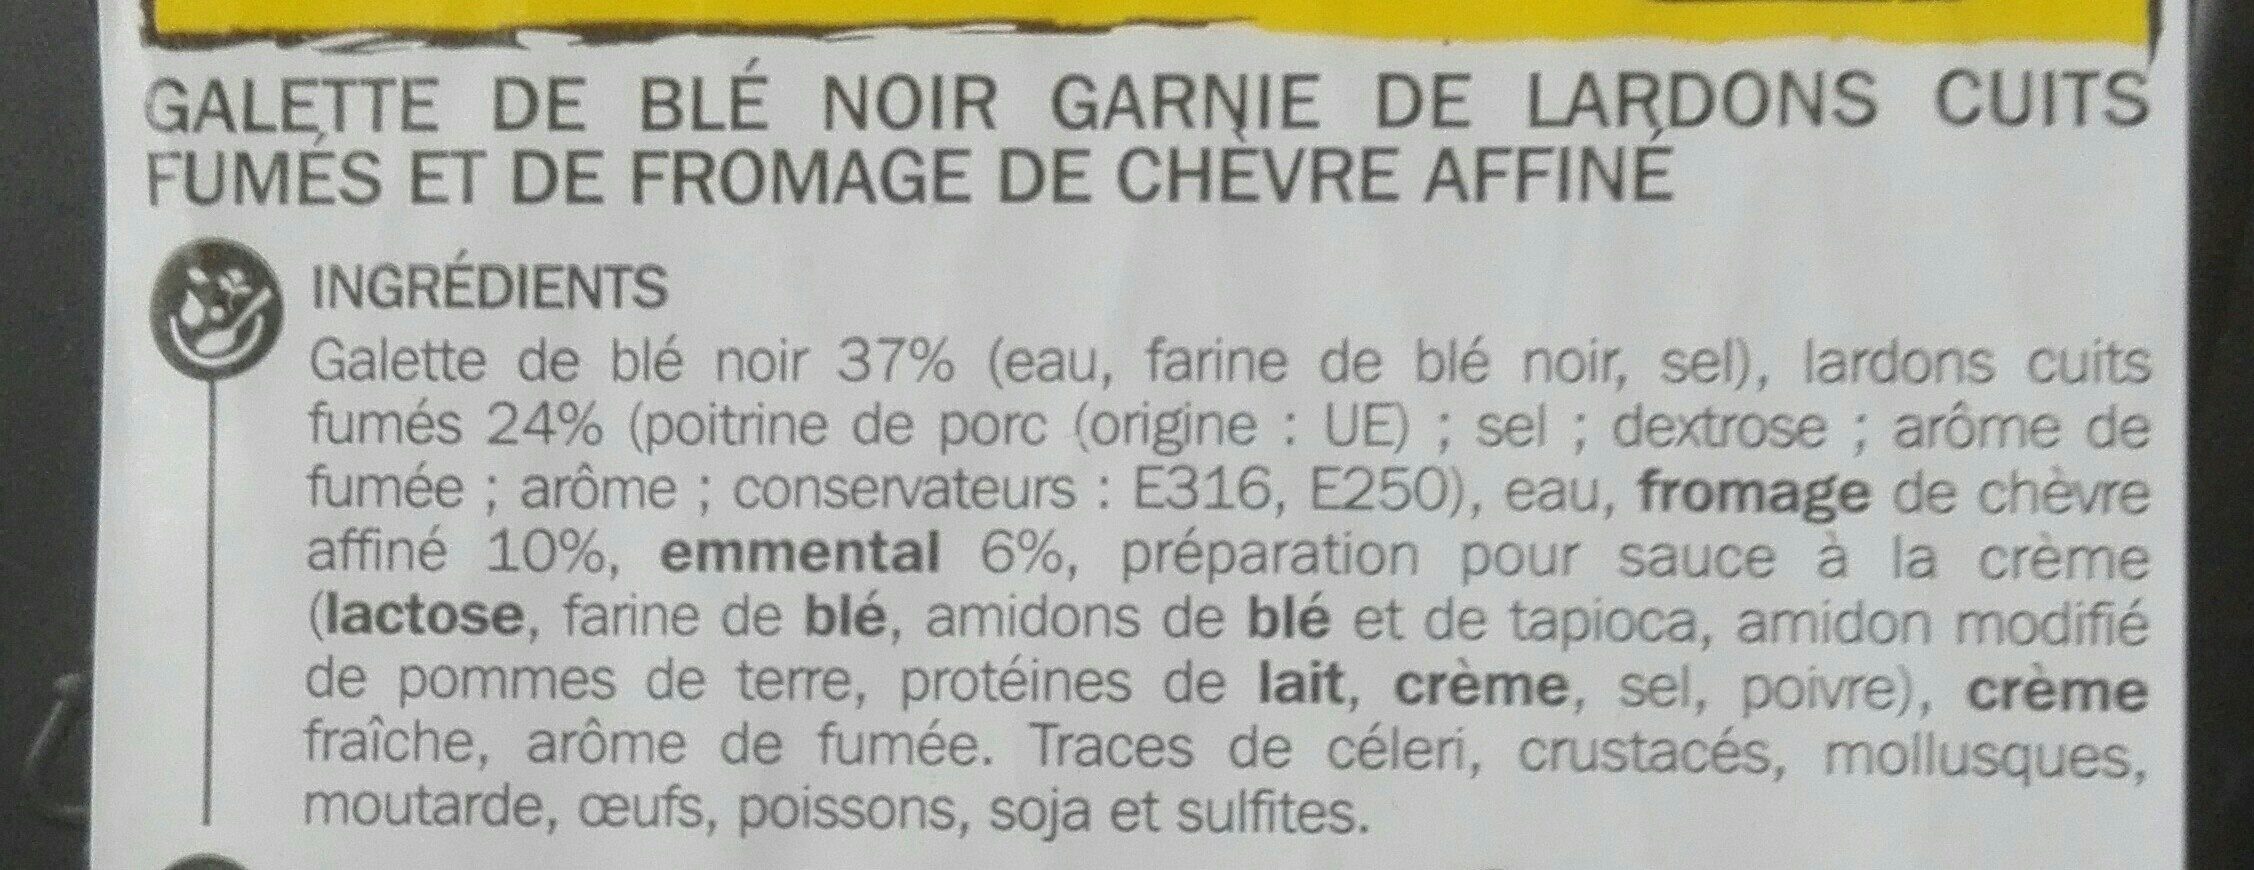 Galette Blé Noir Côté Table, Lardons Chèvre - Ingrédients